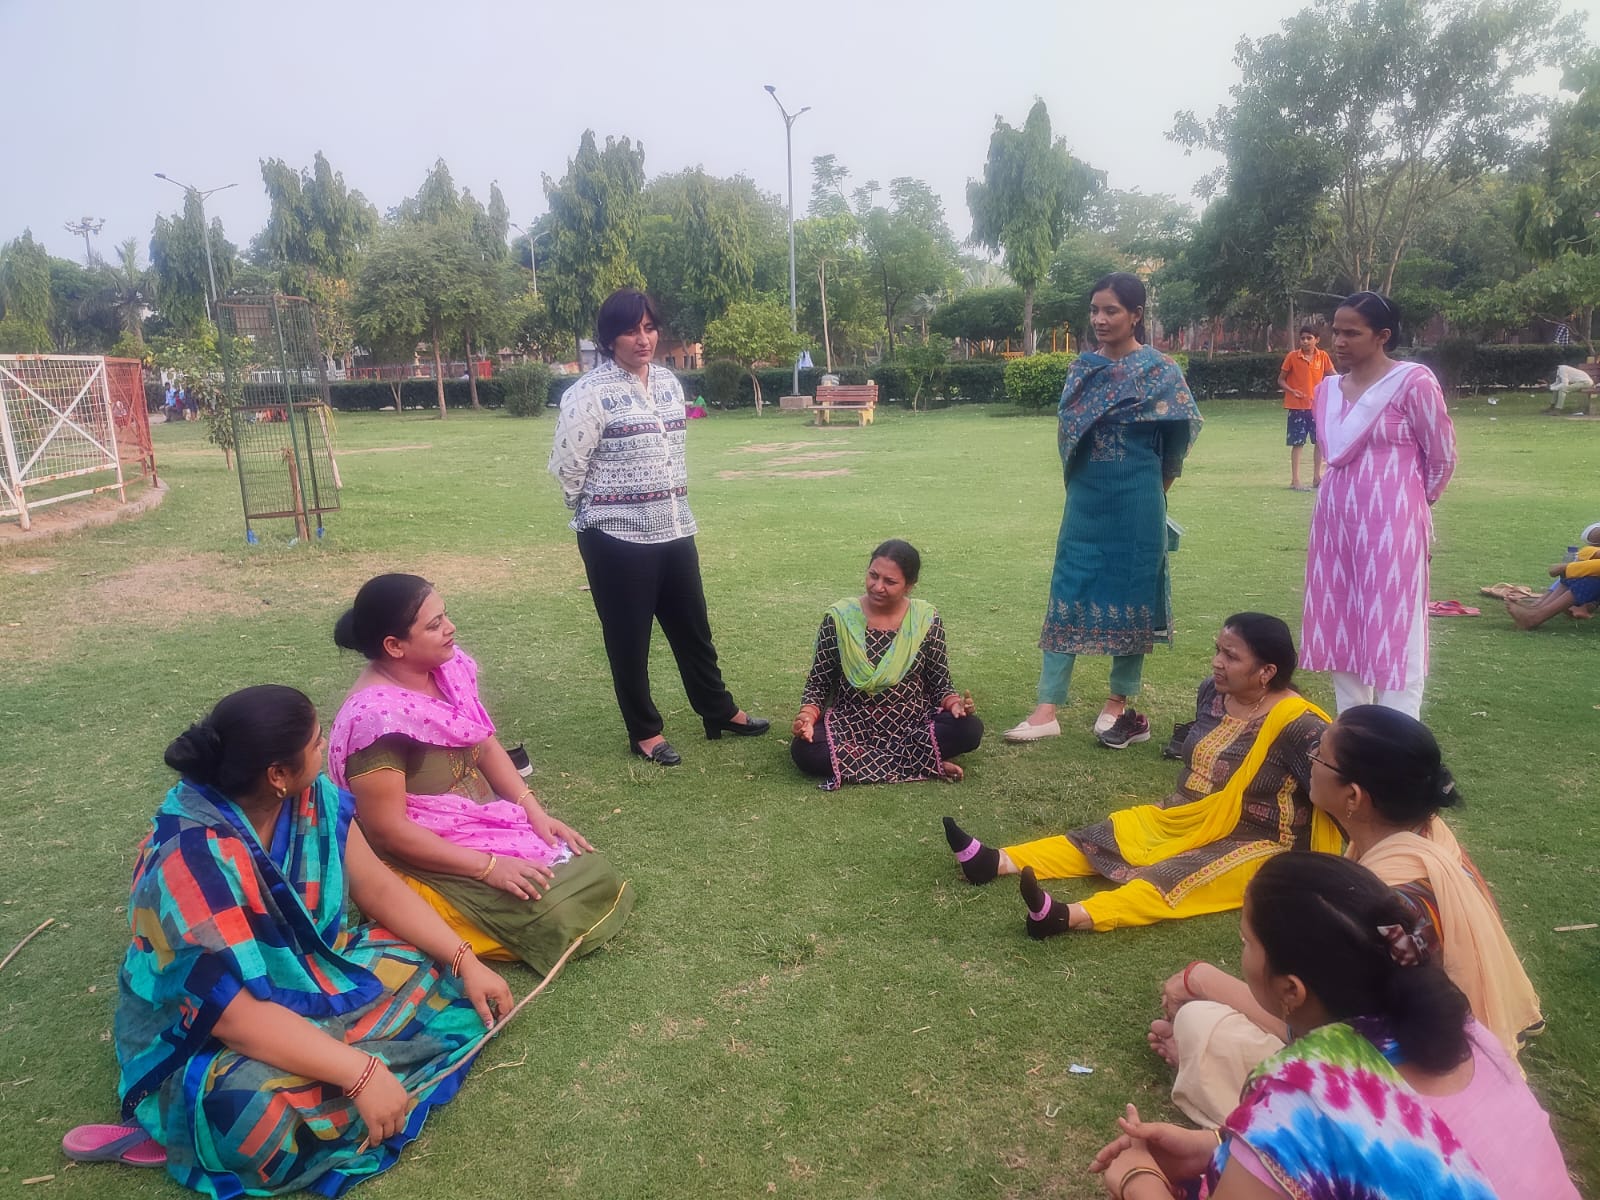 बल्लभगढ़ तथा दुर्गा शक्ति की टीम ने महिलाओं के साथ भद्दे कमेंट करते 6 मनचलों पर कसा शिकंजा